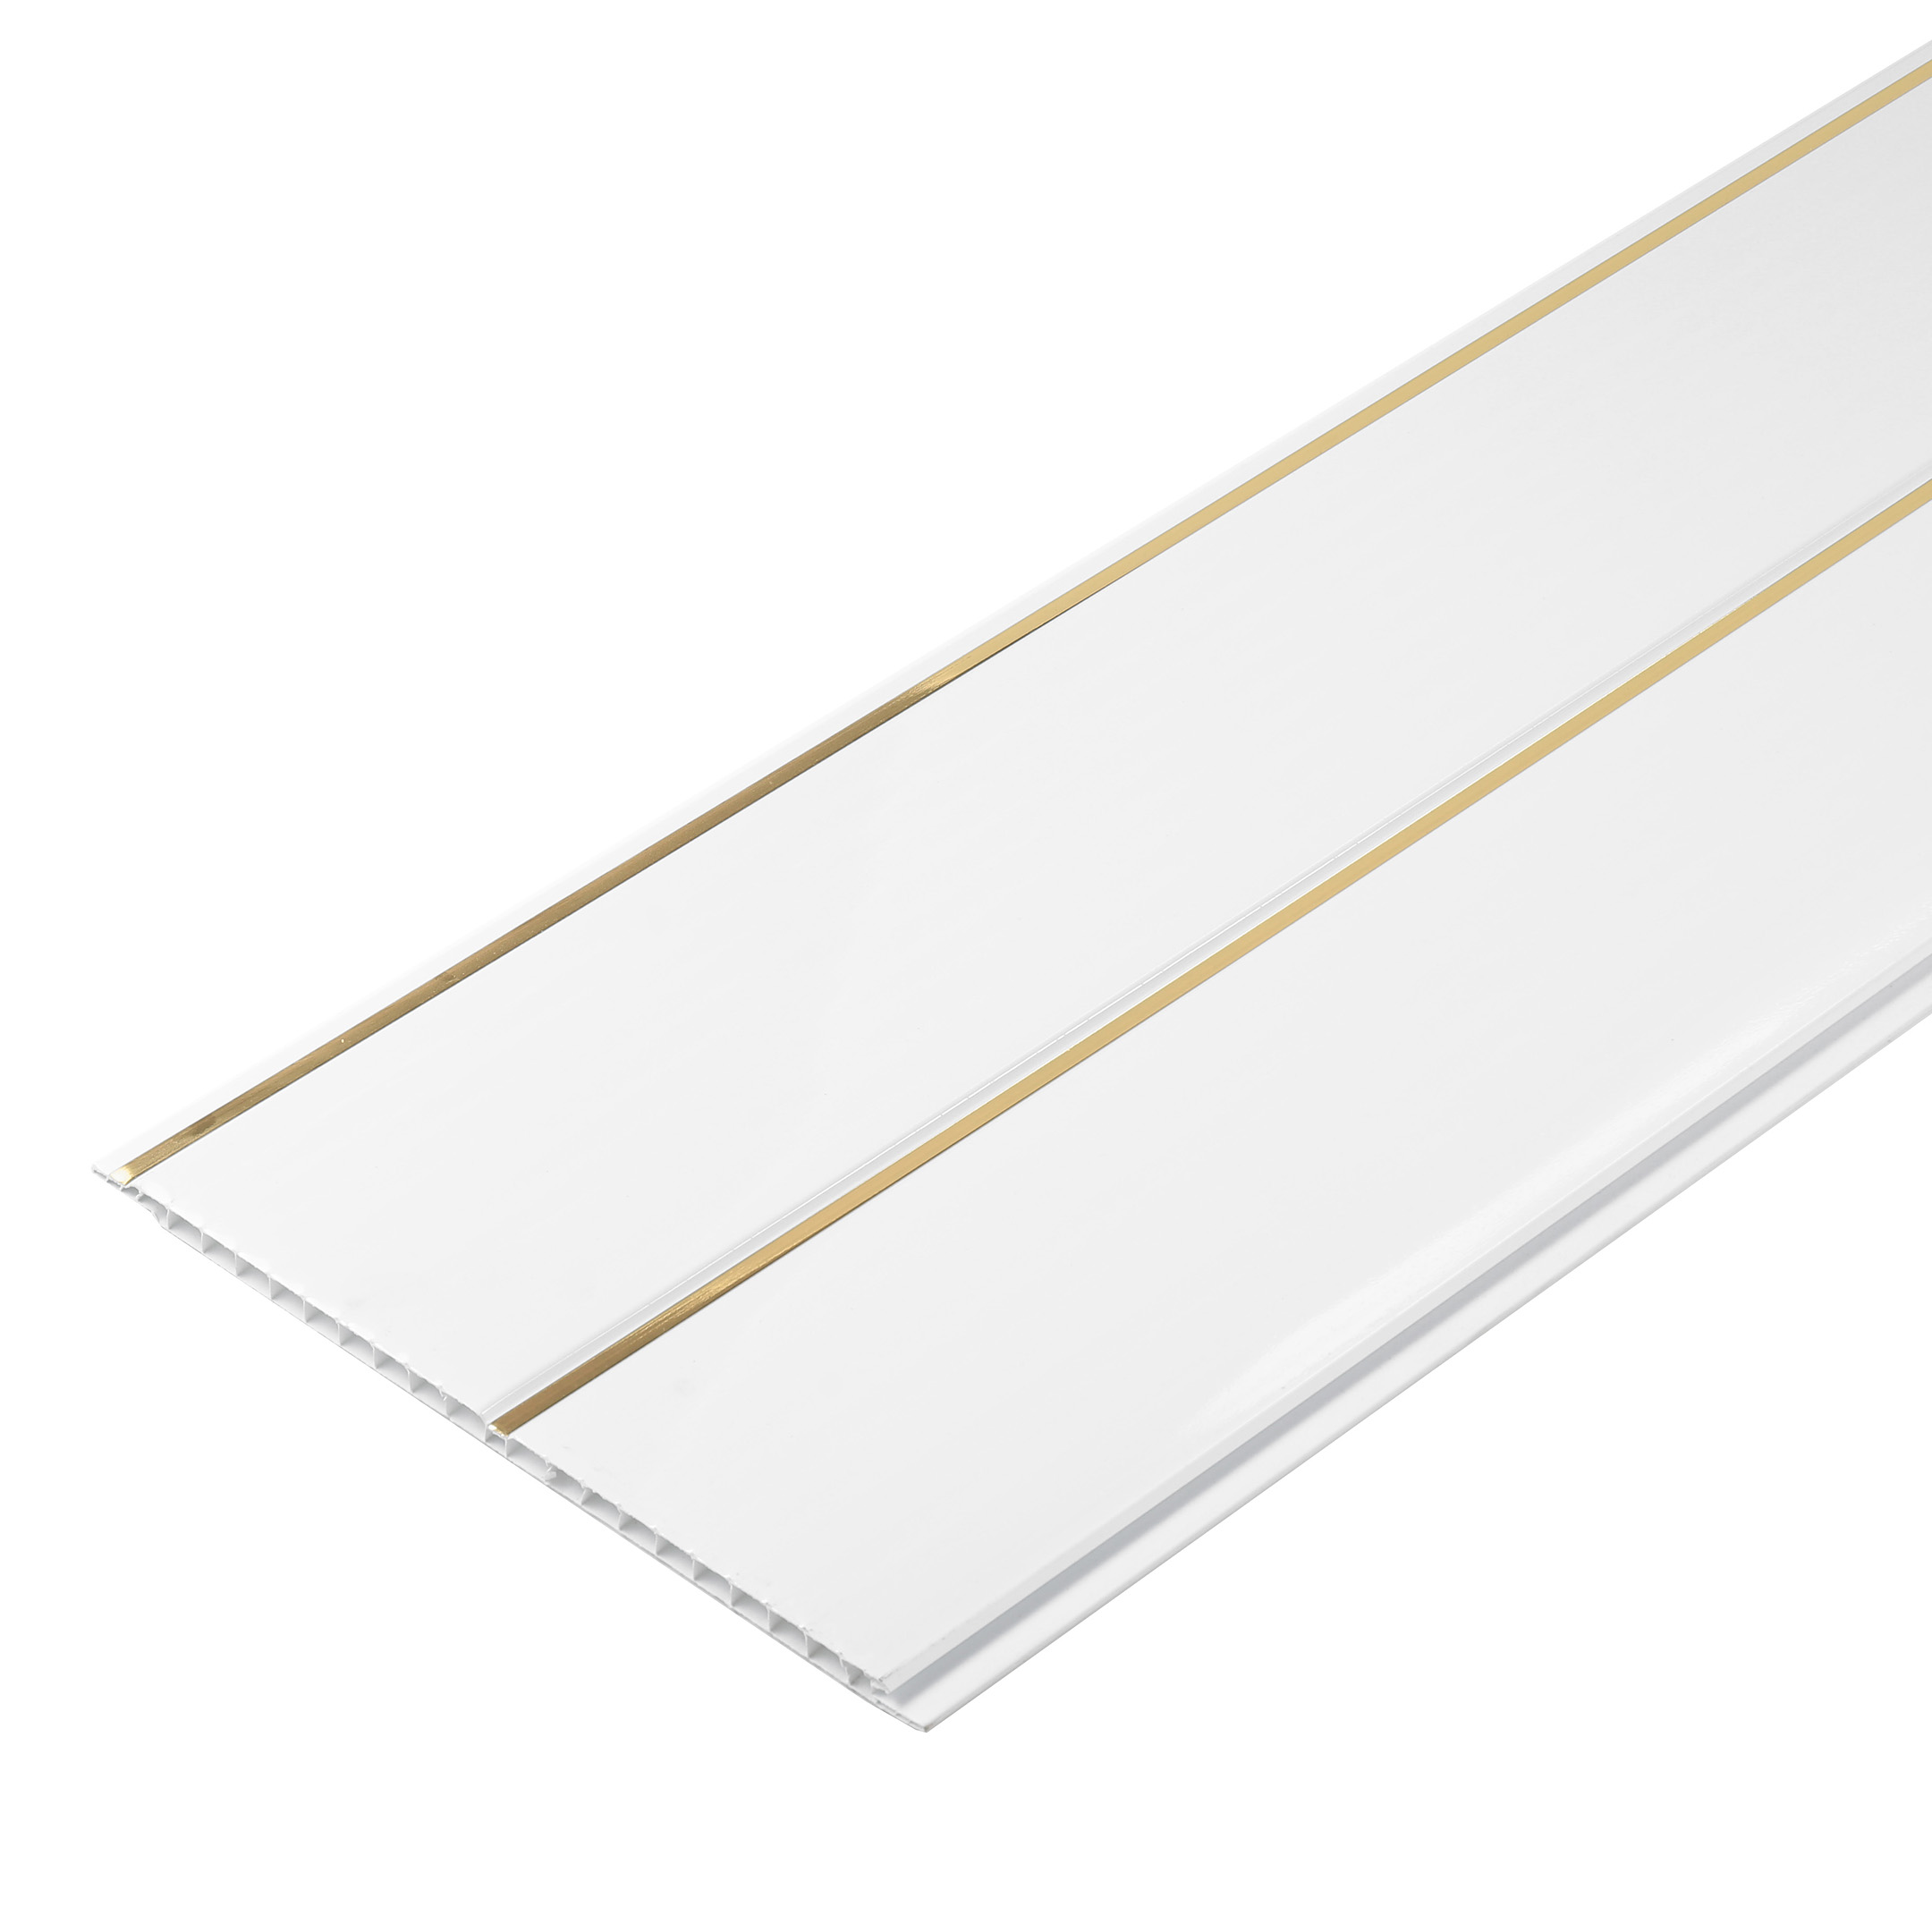 Панель ПВХ 240х3000х7,5 мм Nordside рейка двойная золото 0,72 кв.м потолочные панели пвх идеал белый глянец золото 240х3000х8мм повышенной прочности